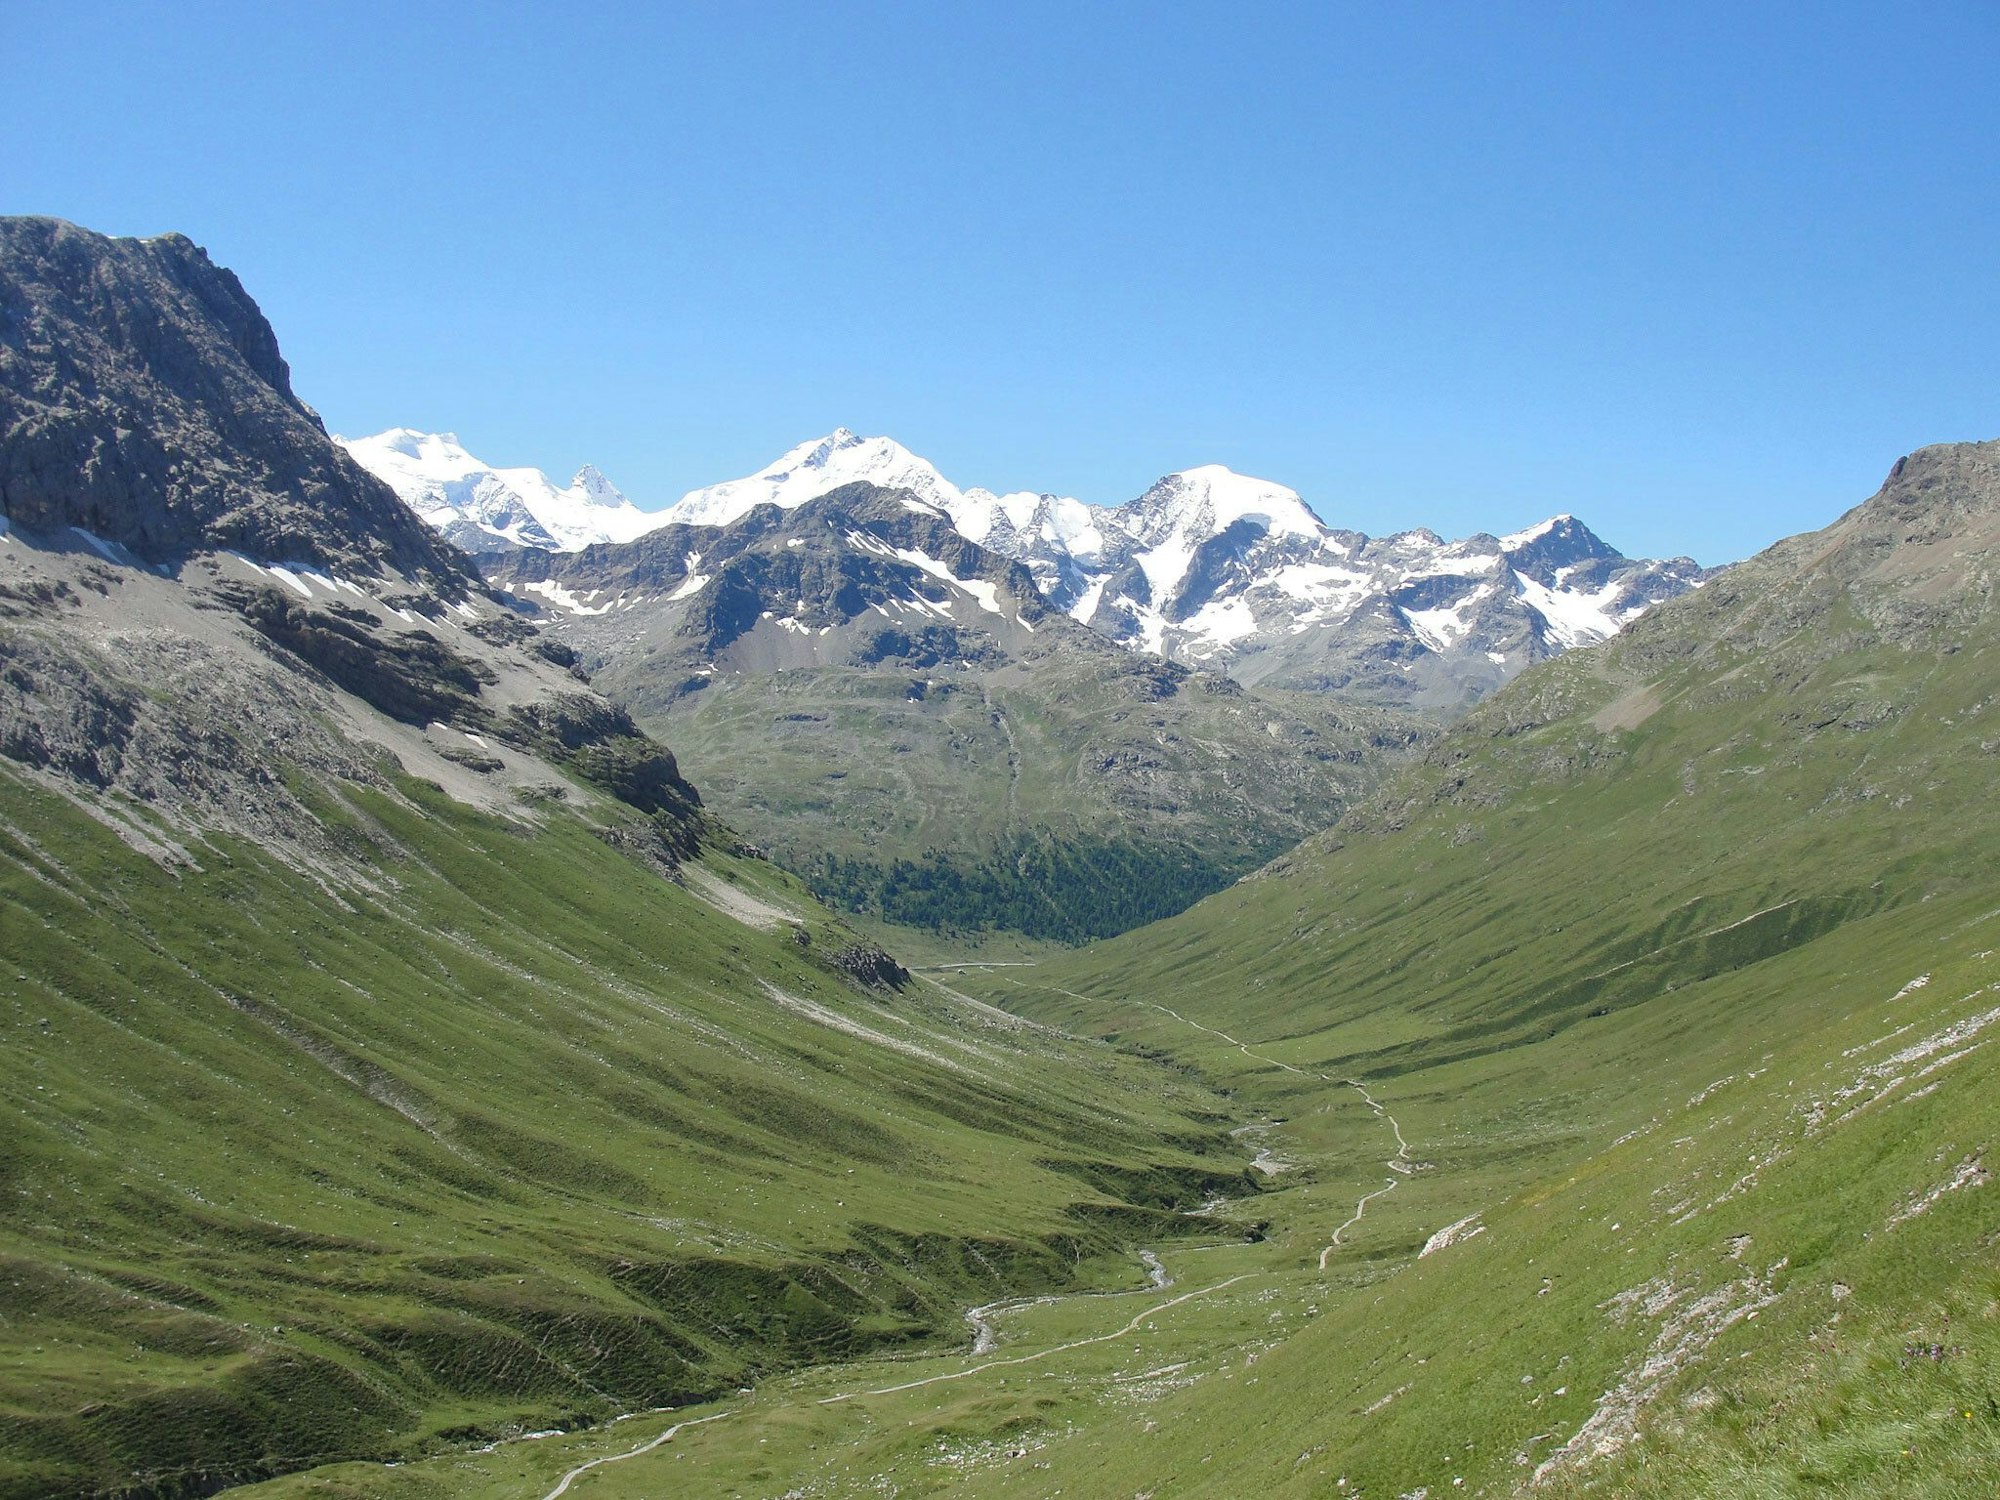 Die Alpen: Blick vom Val da Fain auf den Piz Bernina in der Schweiz.